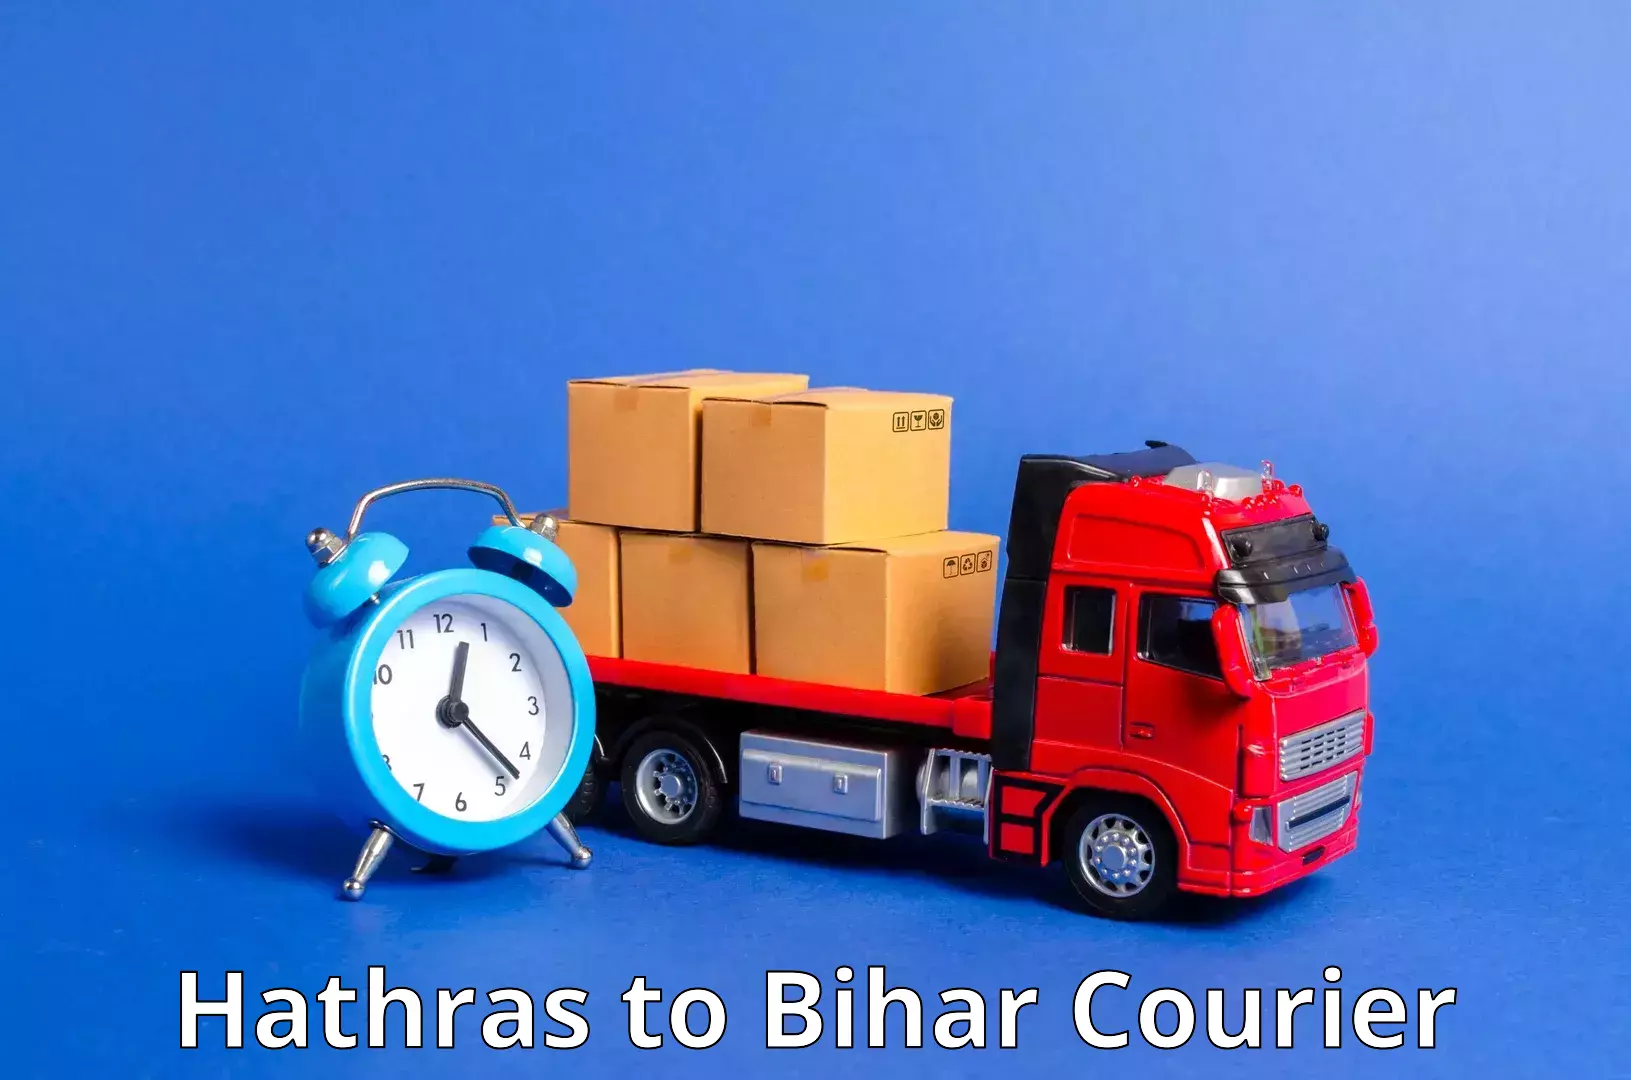 Cargo delivery service Hathras to Bahadurganj